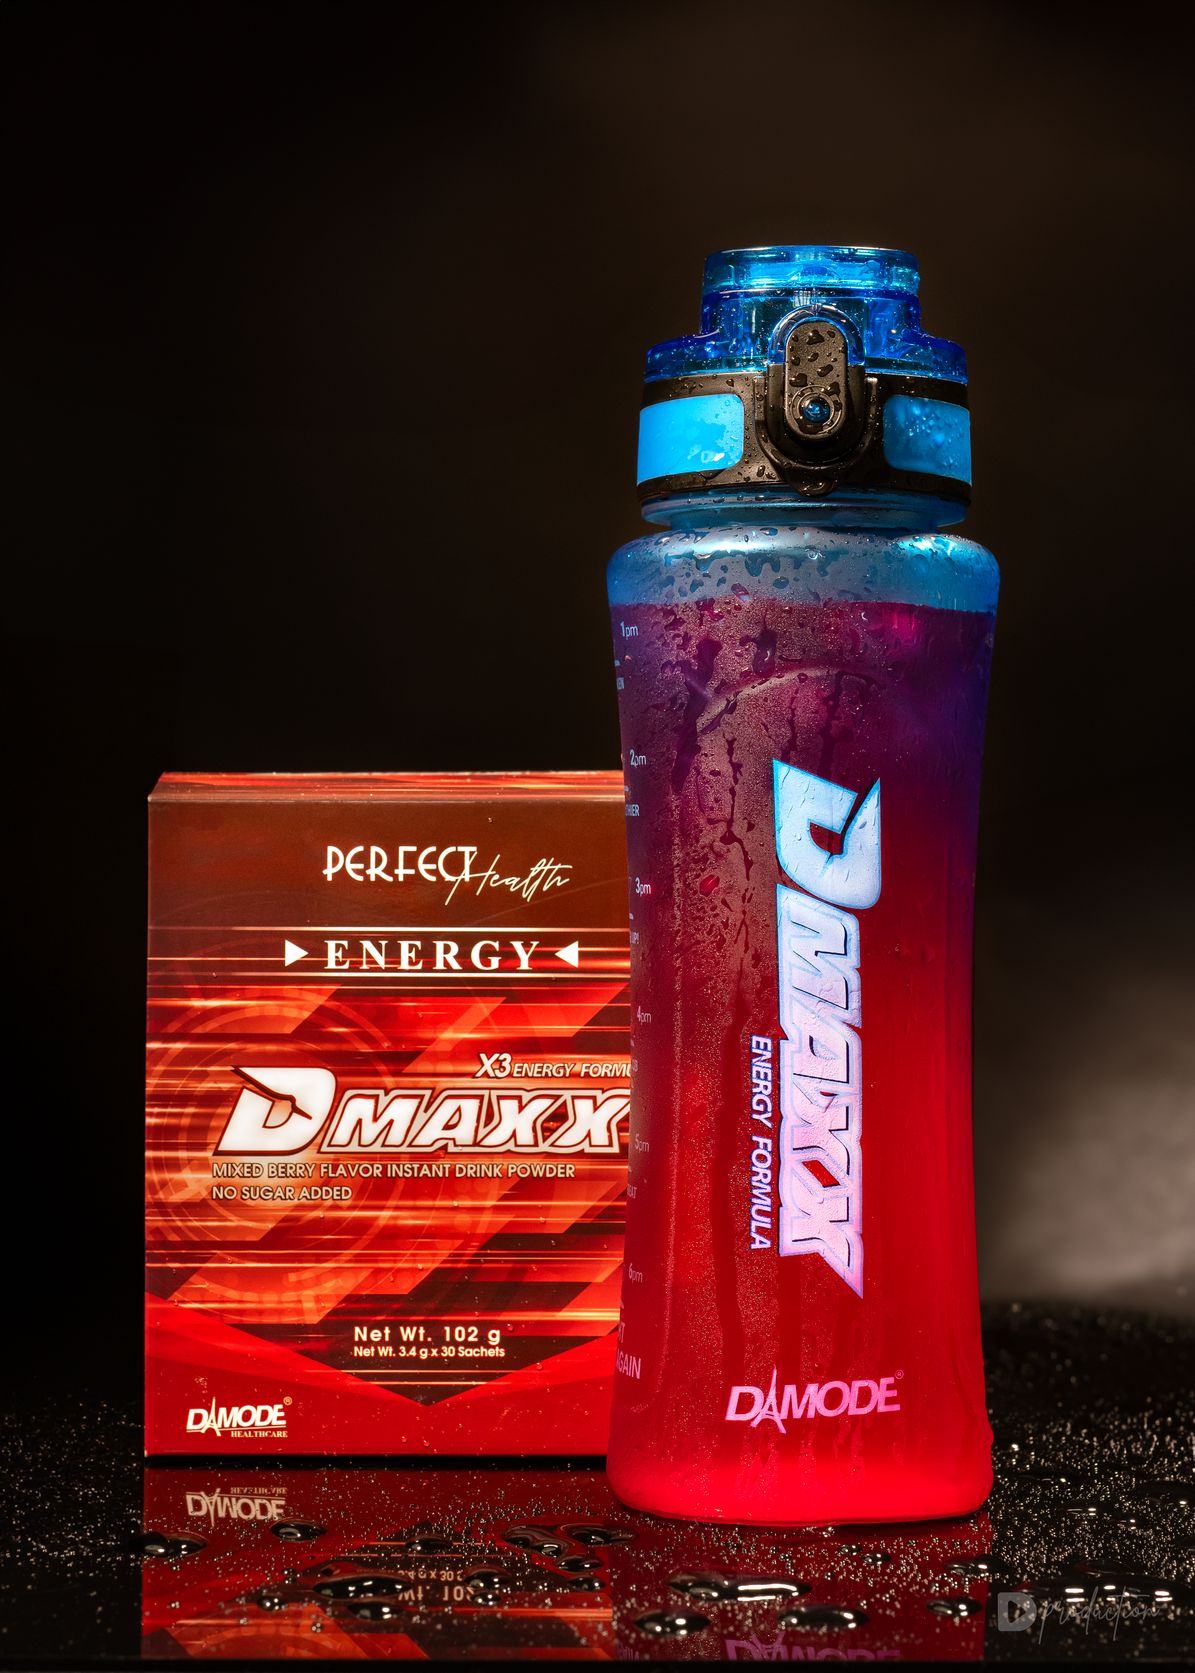 "Giang cư mận" háo hức với thức uống năng lượng không đường mới từ Thái Lan mang tên Dmaxx